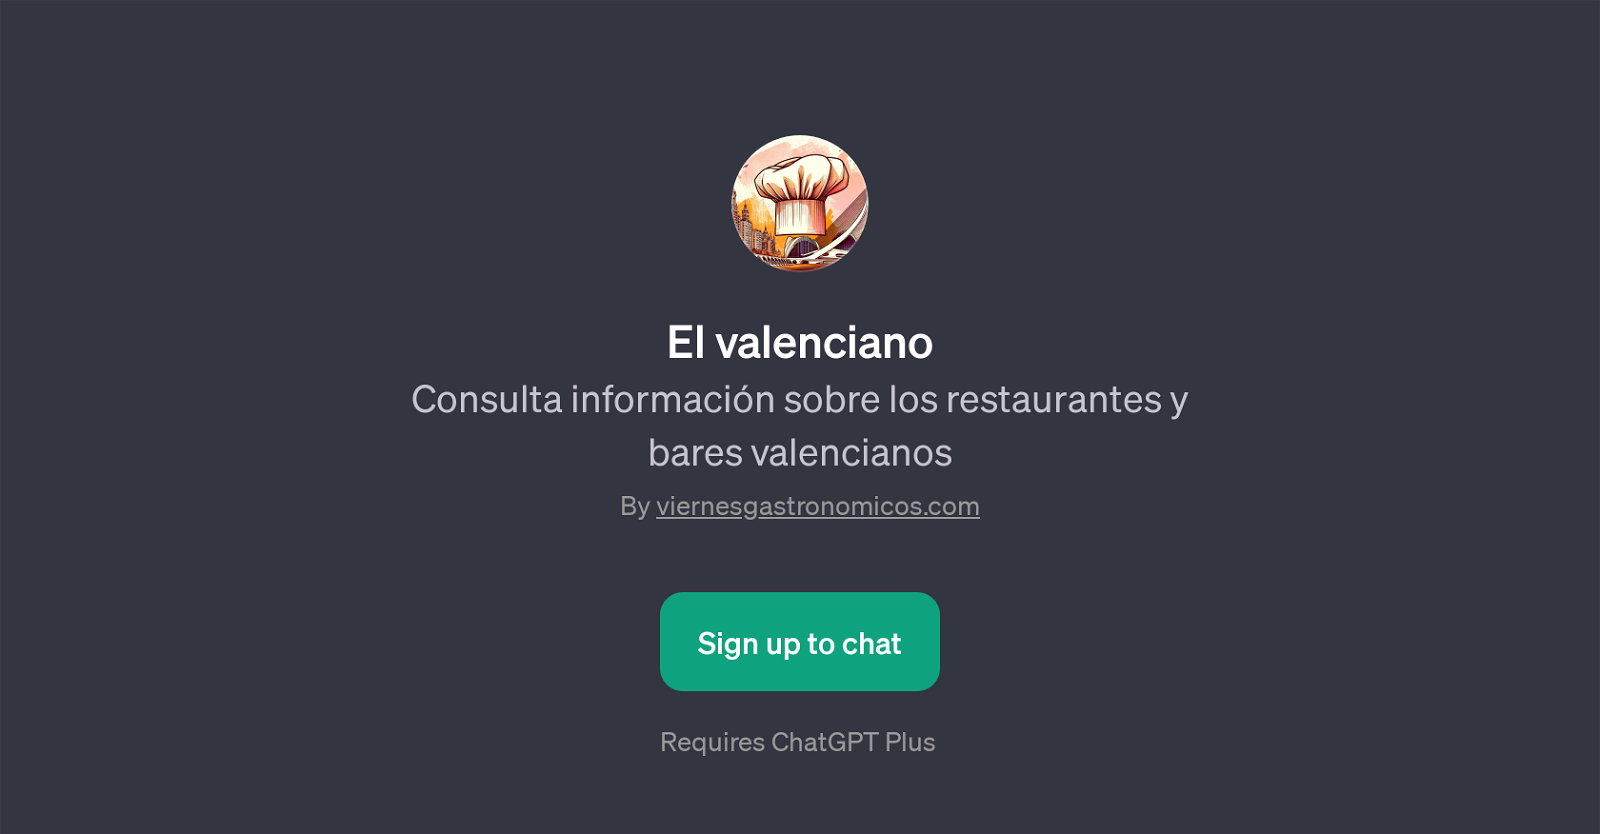 El valenciano website